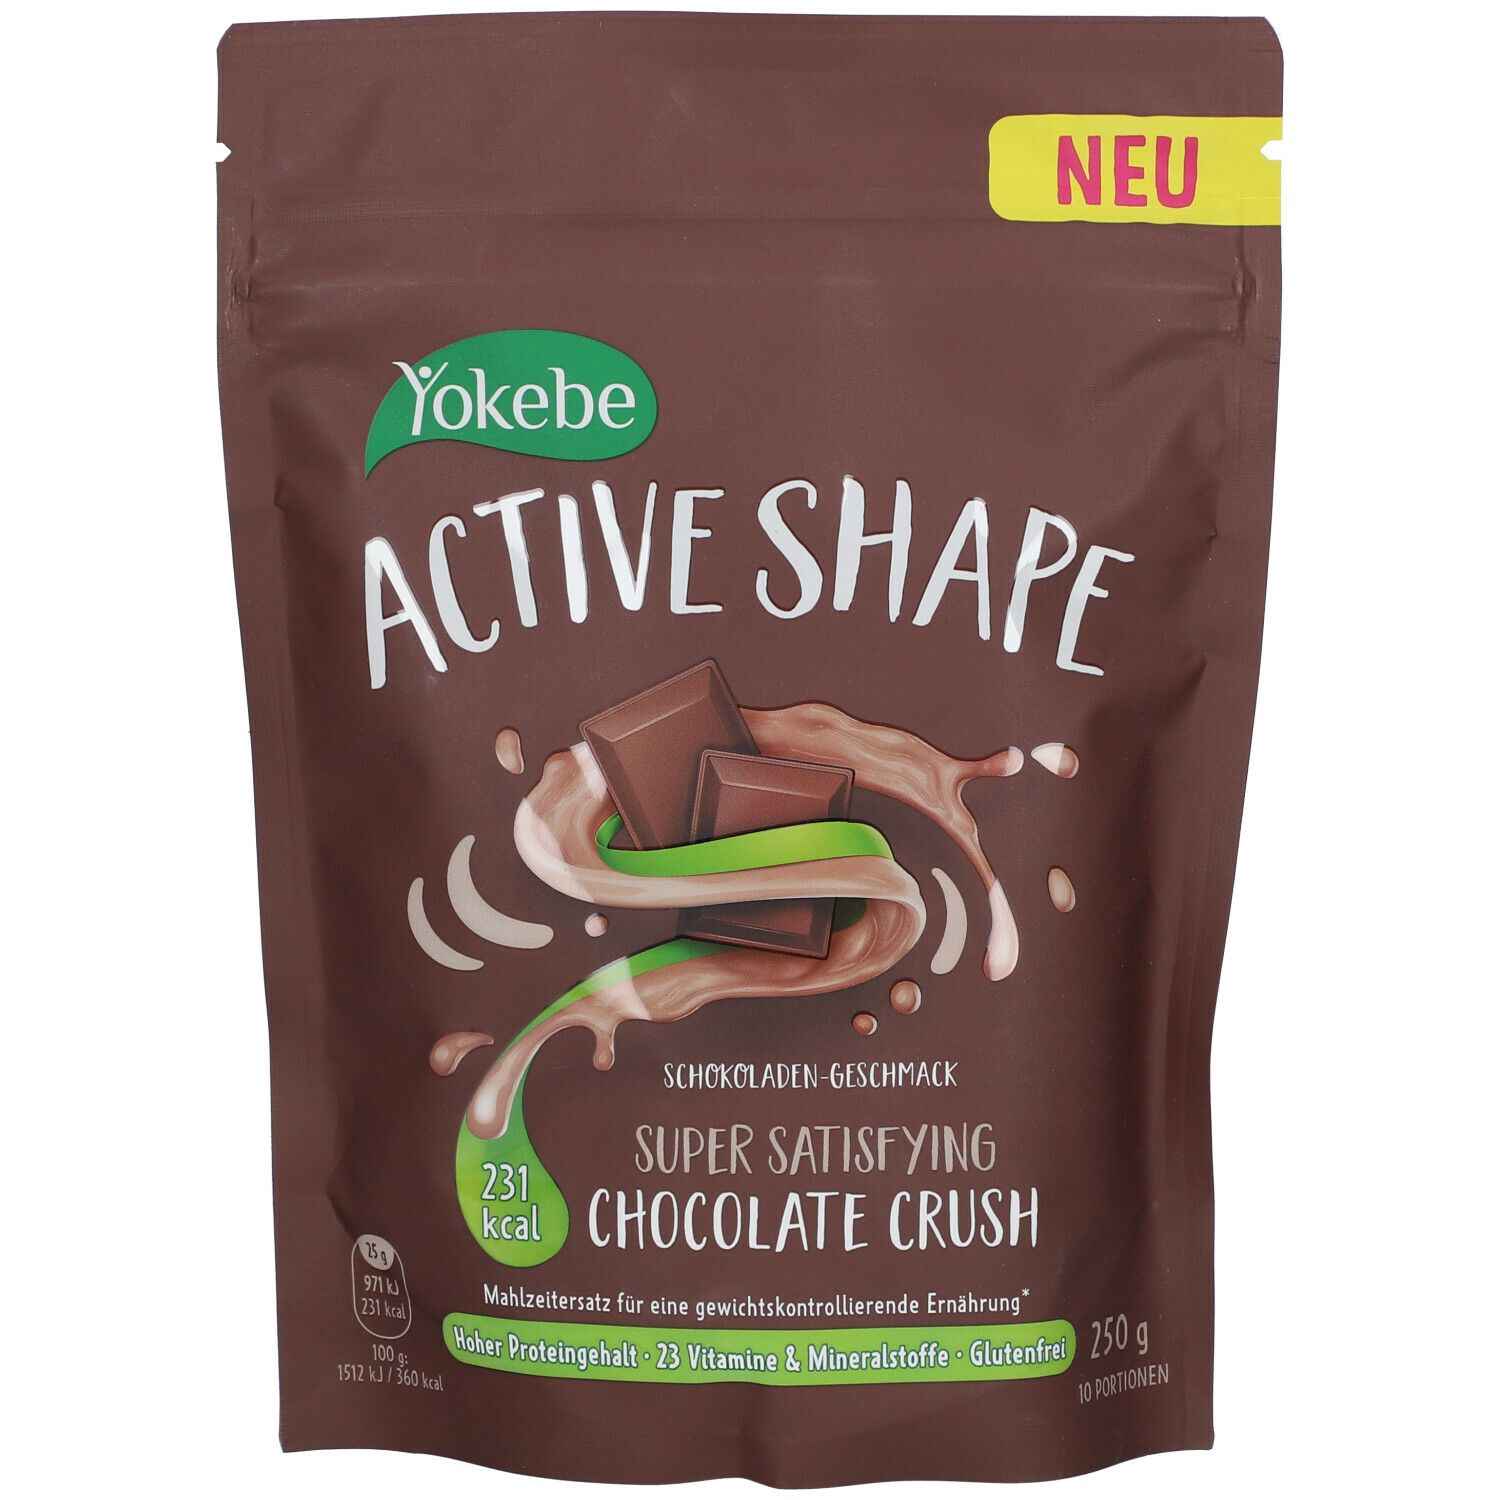 Yokebe Active Shape Chocolate Crush